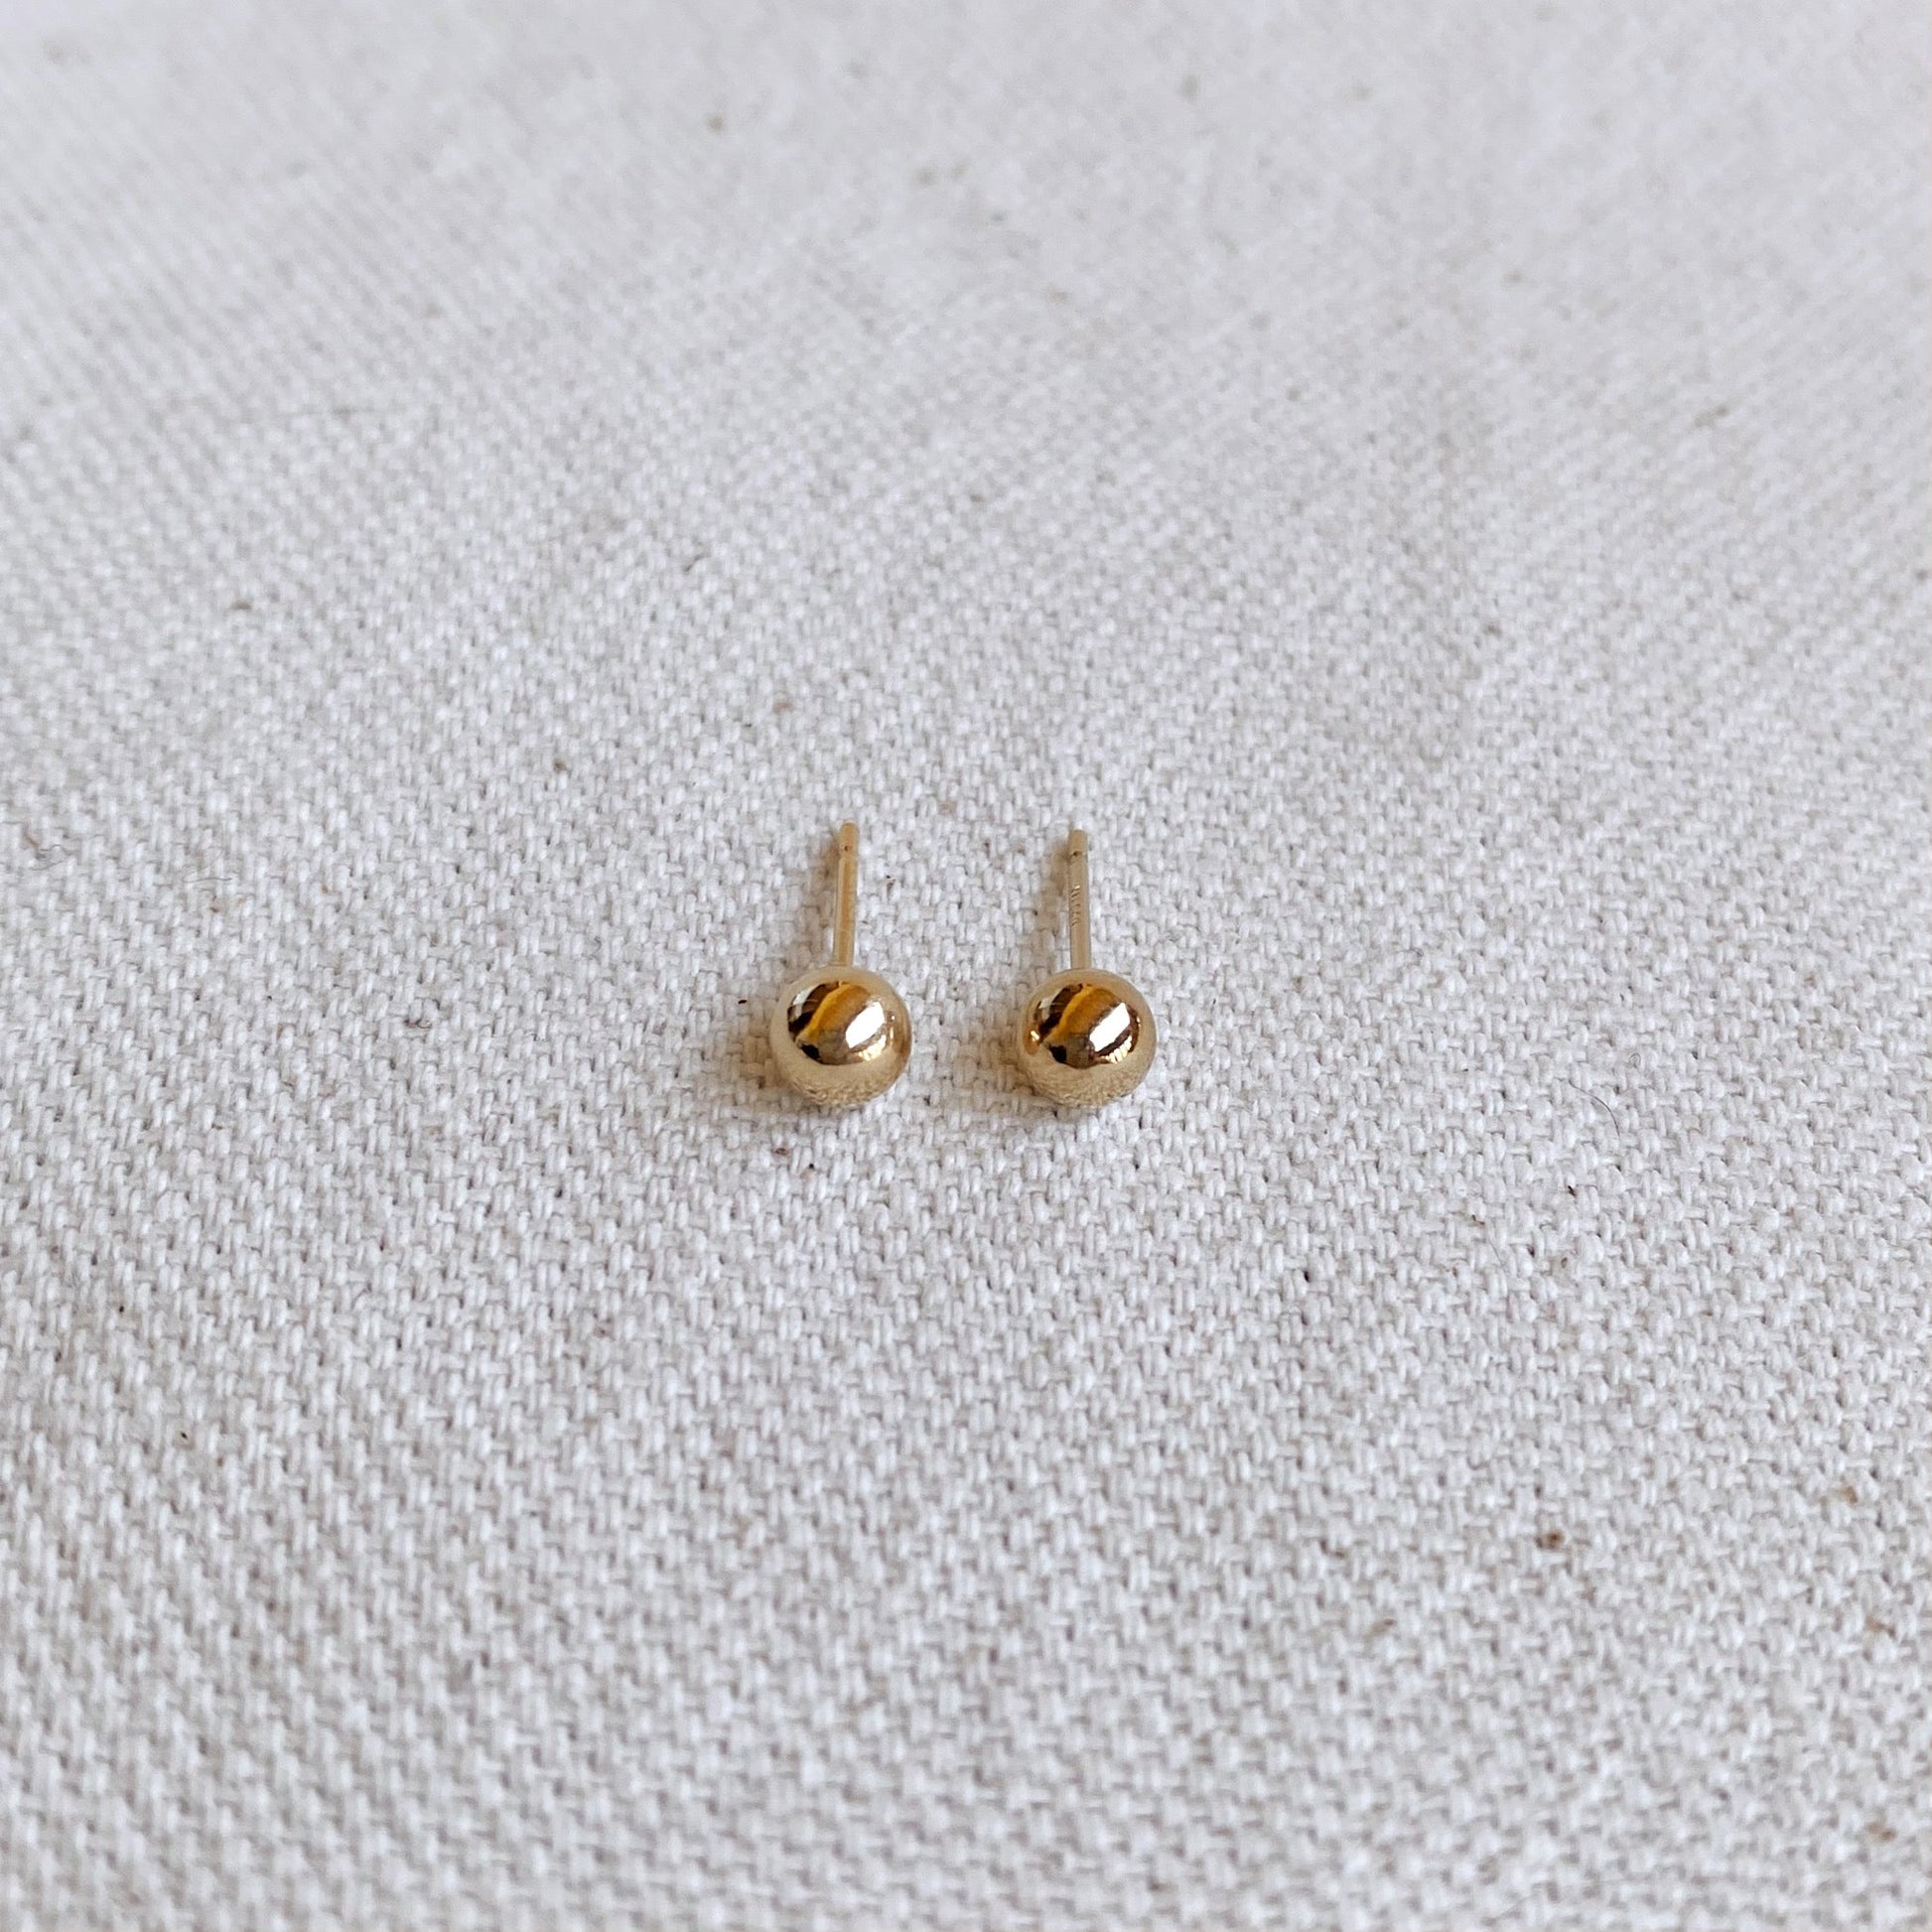 GoldFi 14k Gold Filled 4.0mm Ball Stud Earrings